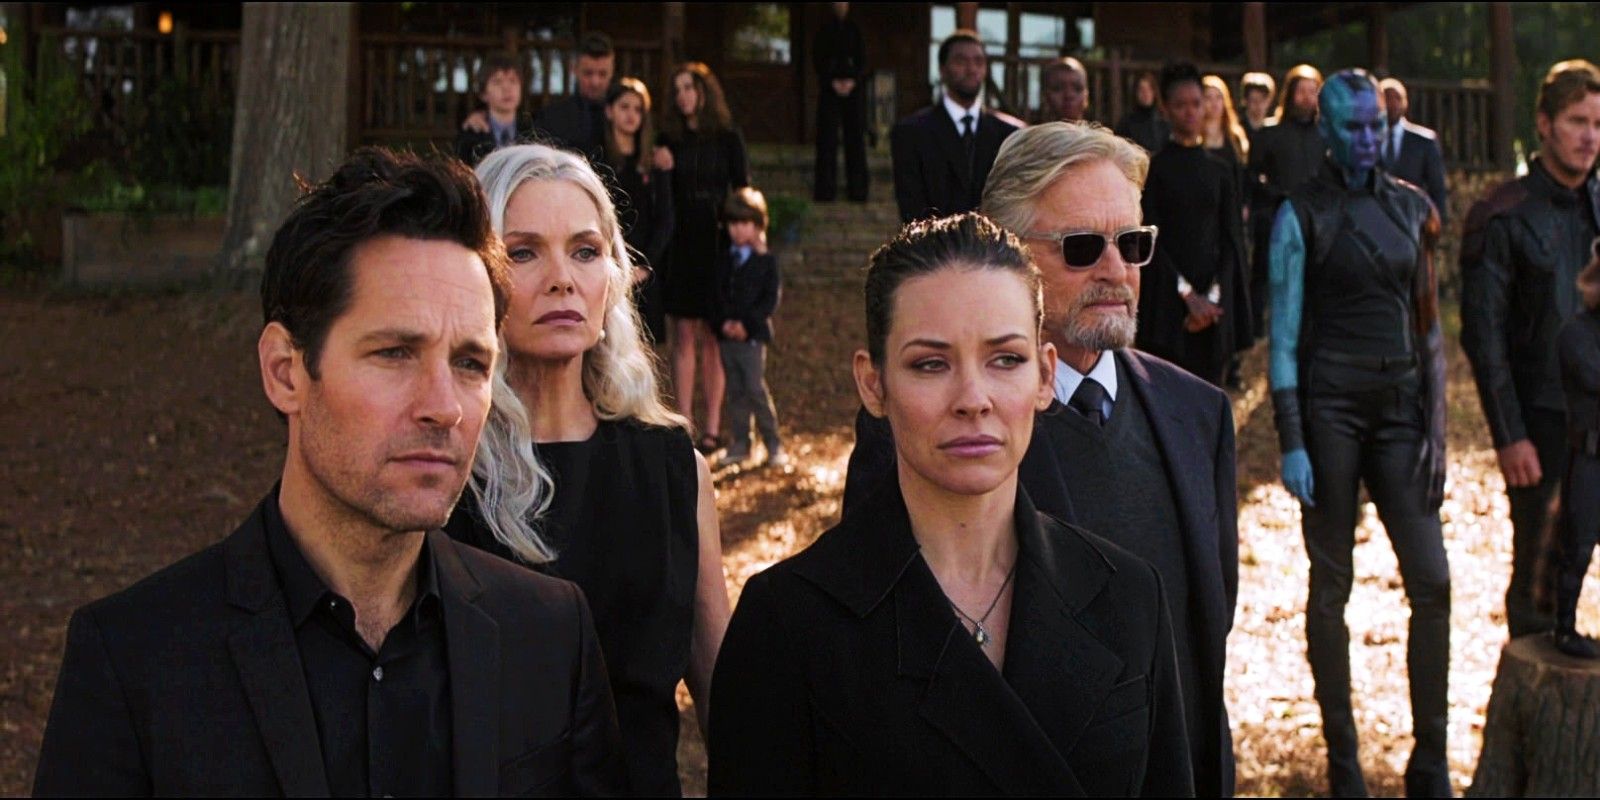 Ant Man cast at Tony Stark funeral in Avengers Endgame